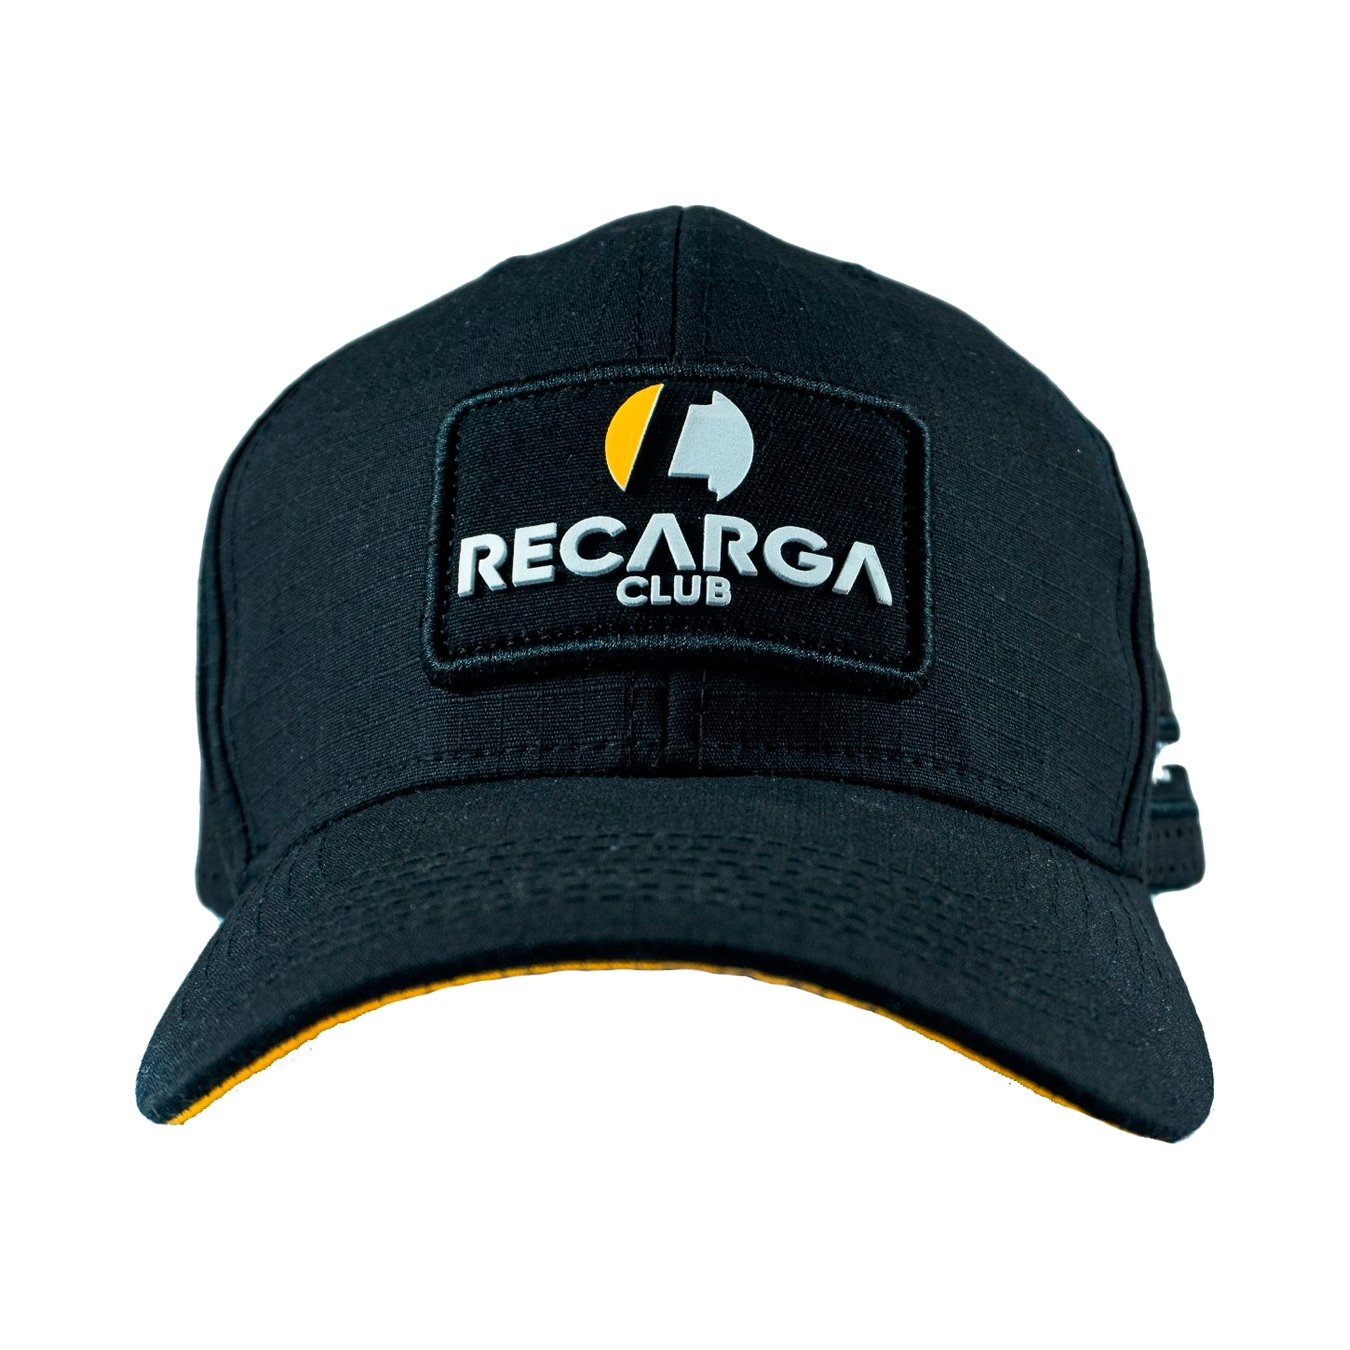 Recarga Club